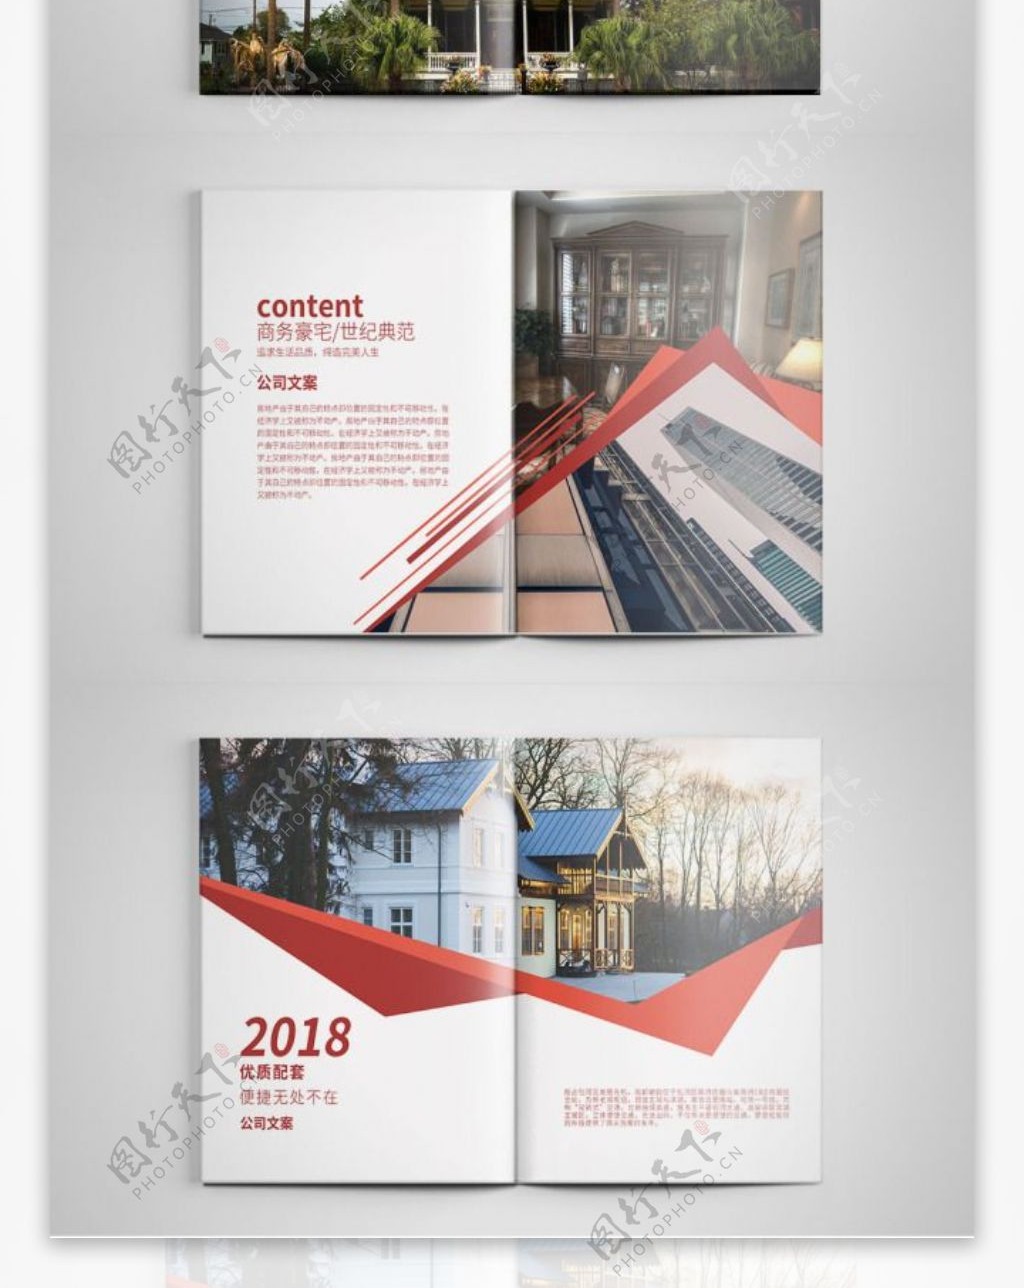 时尚红色房地产宣传画册设计PSD模板